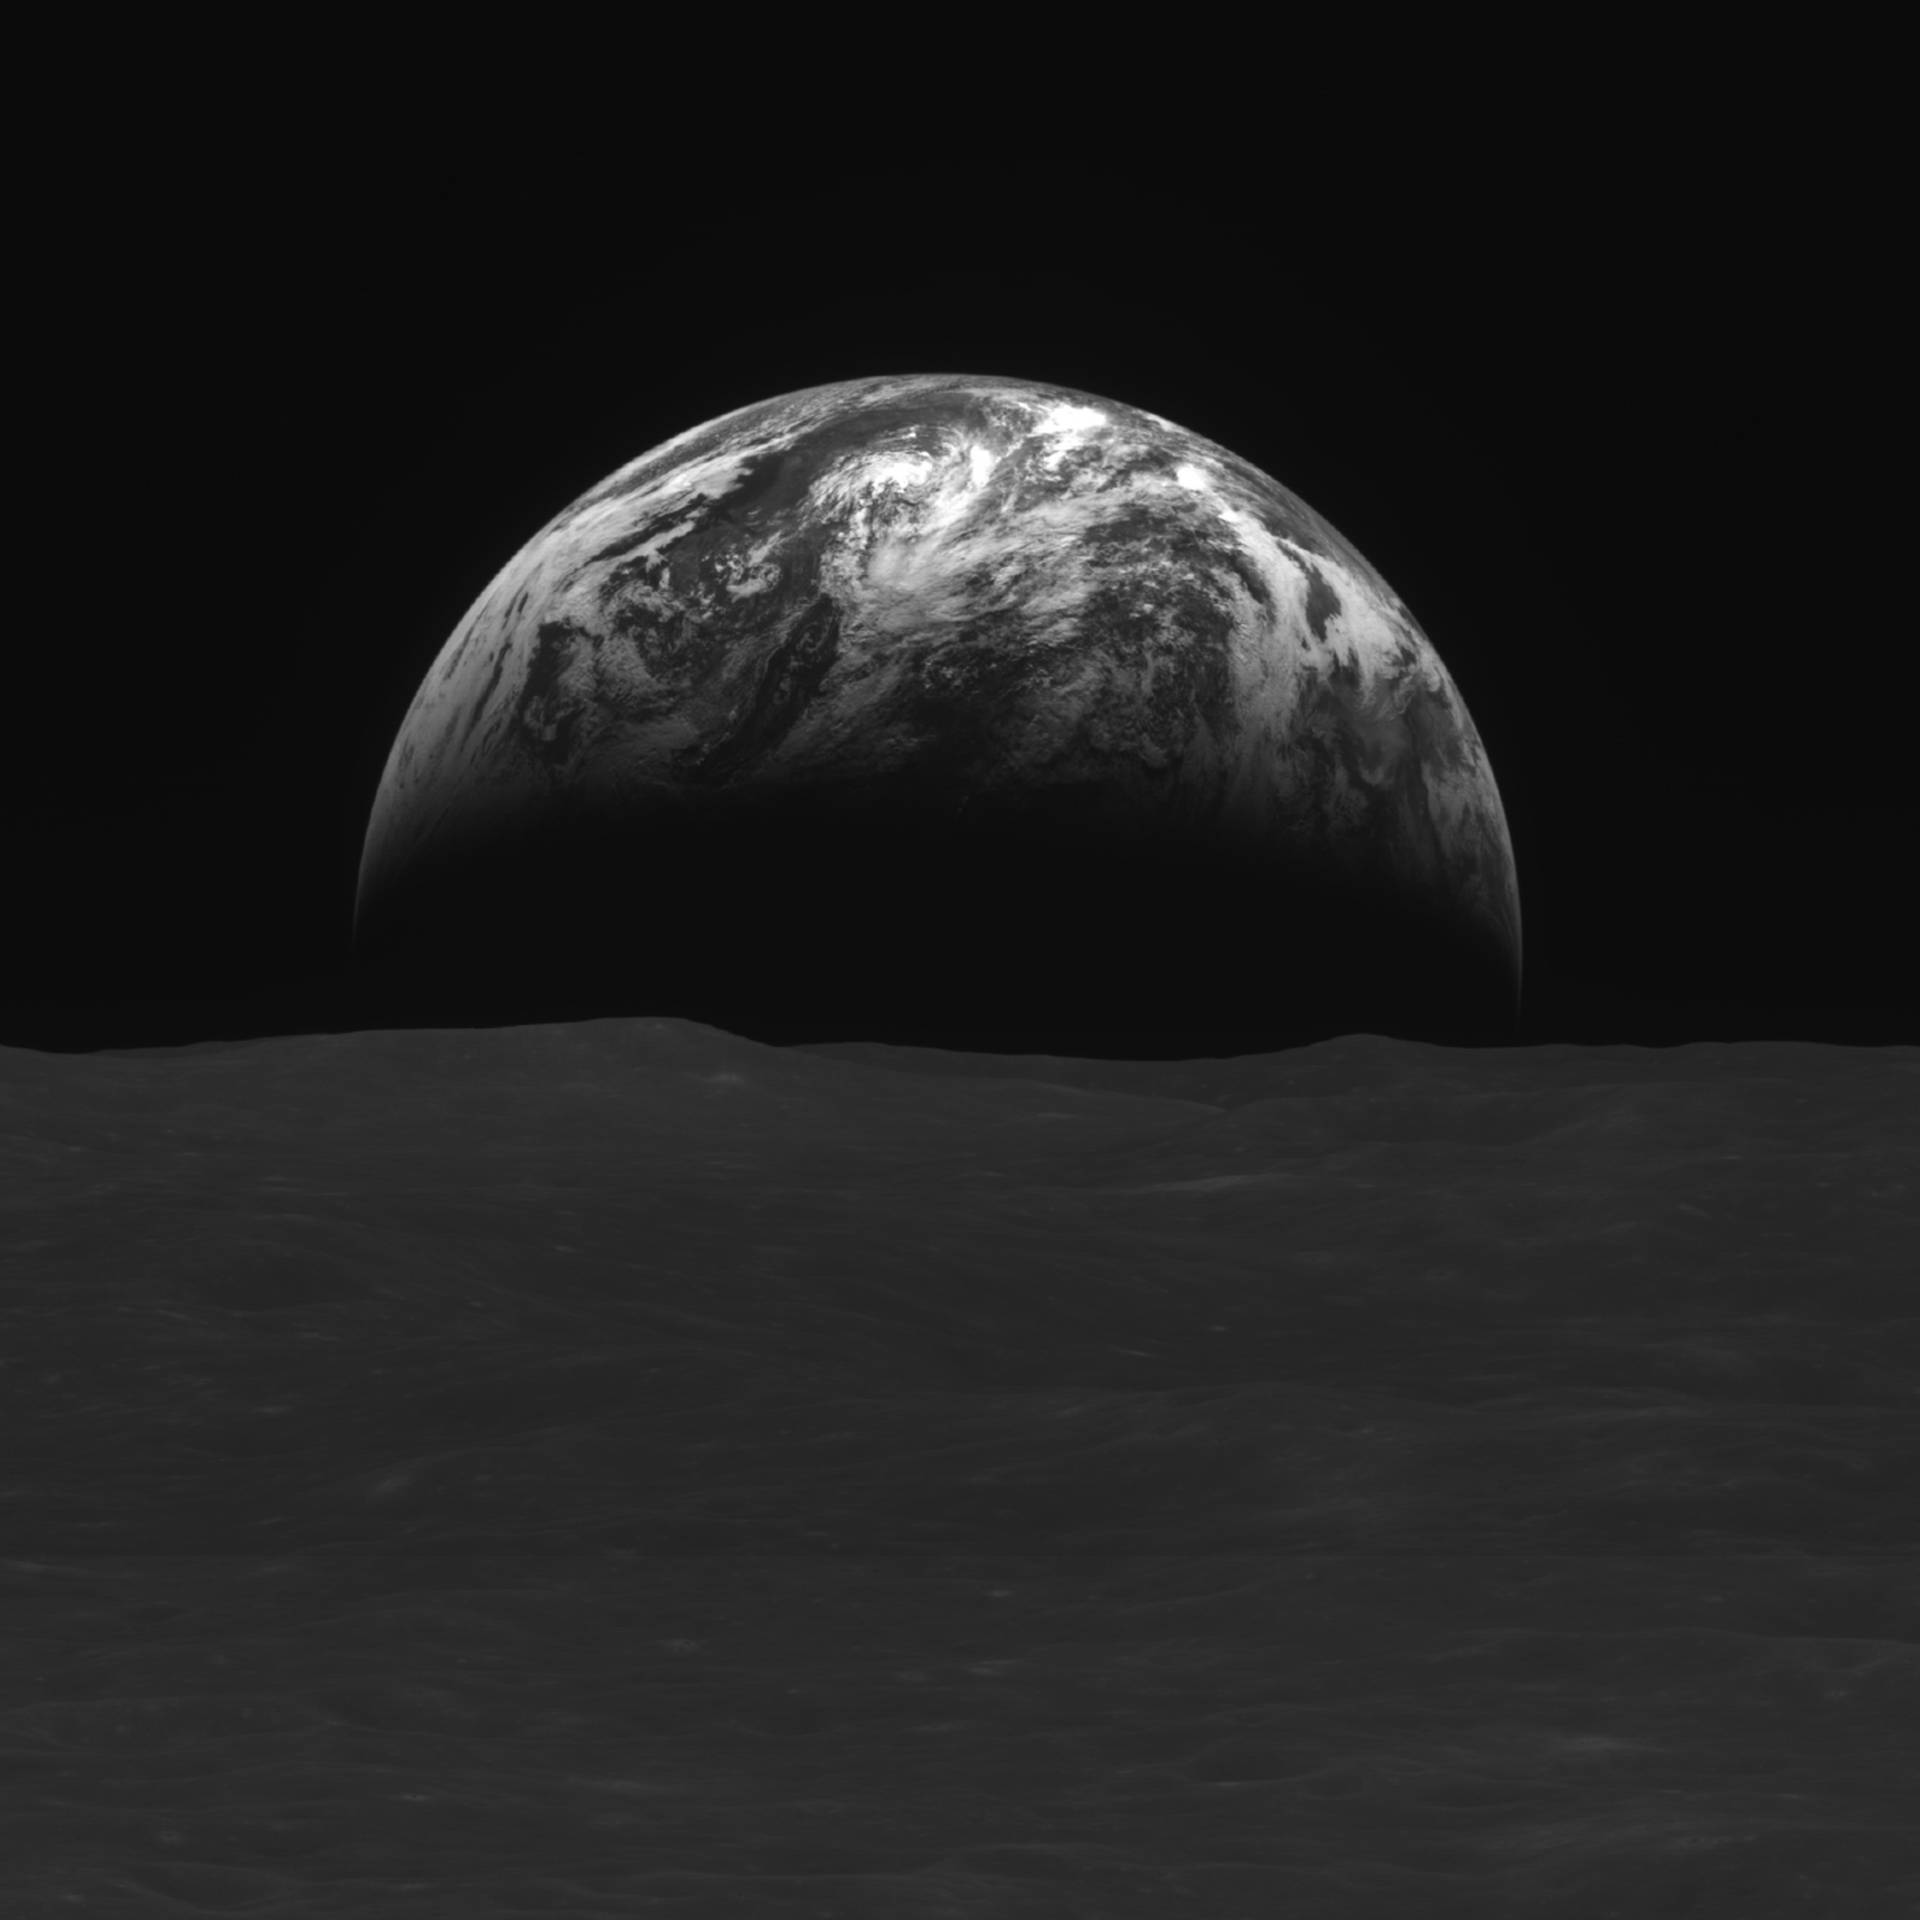 Korejska sonda poslala prve fotografije Zemlje  i Mjeseca, testirat će 'svemirski internet'